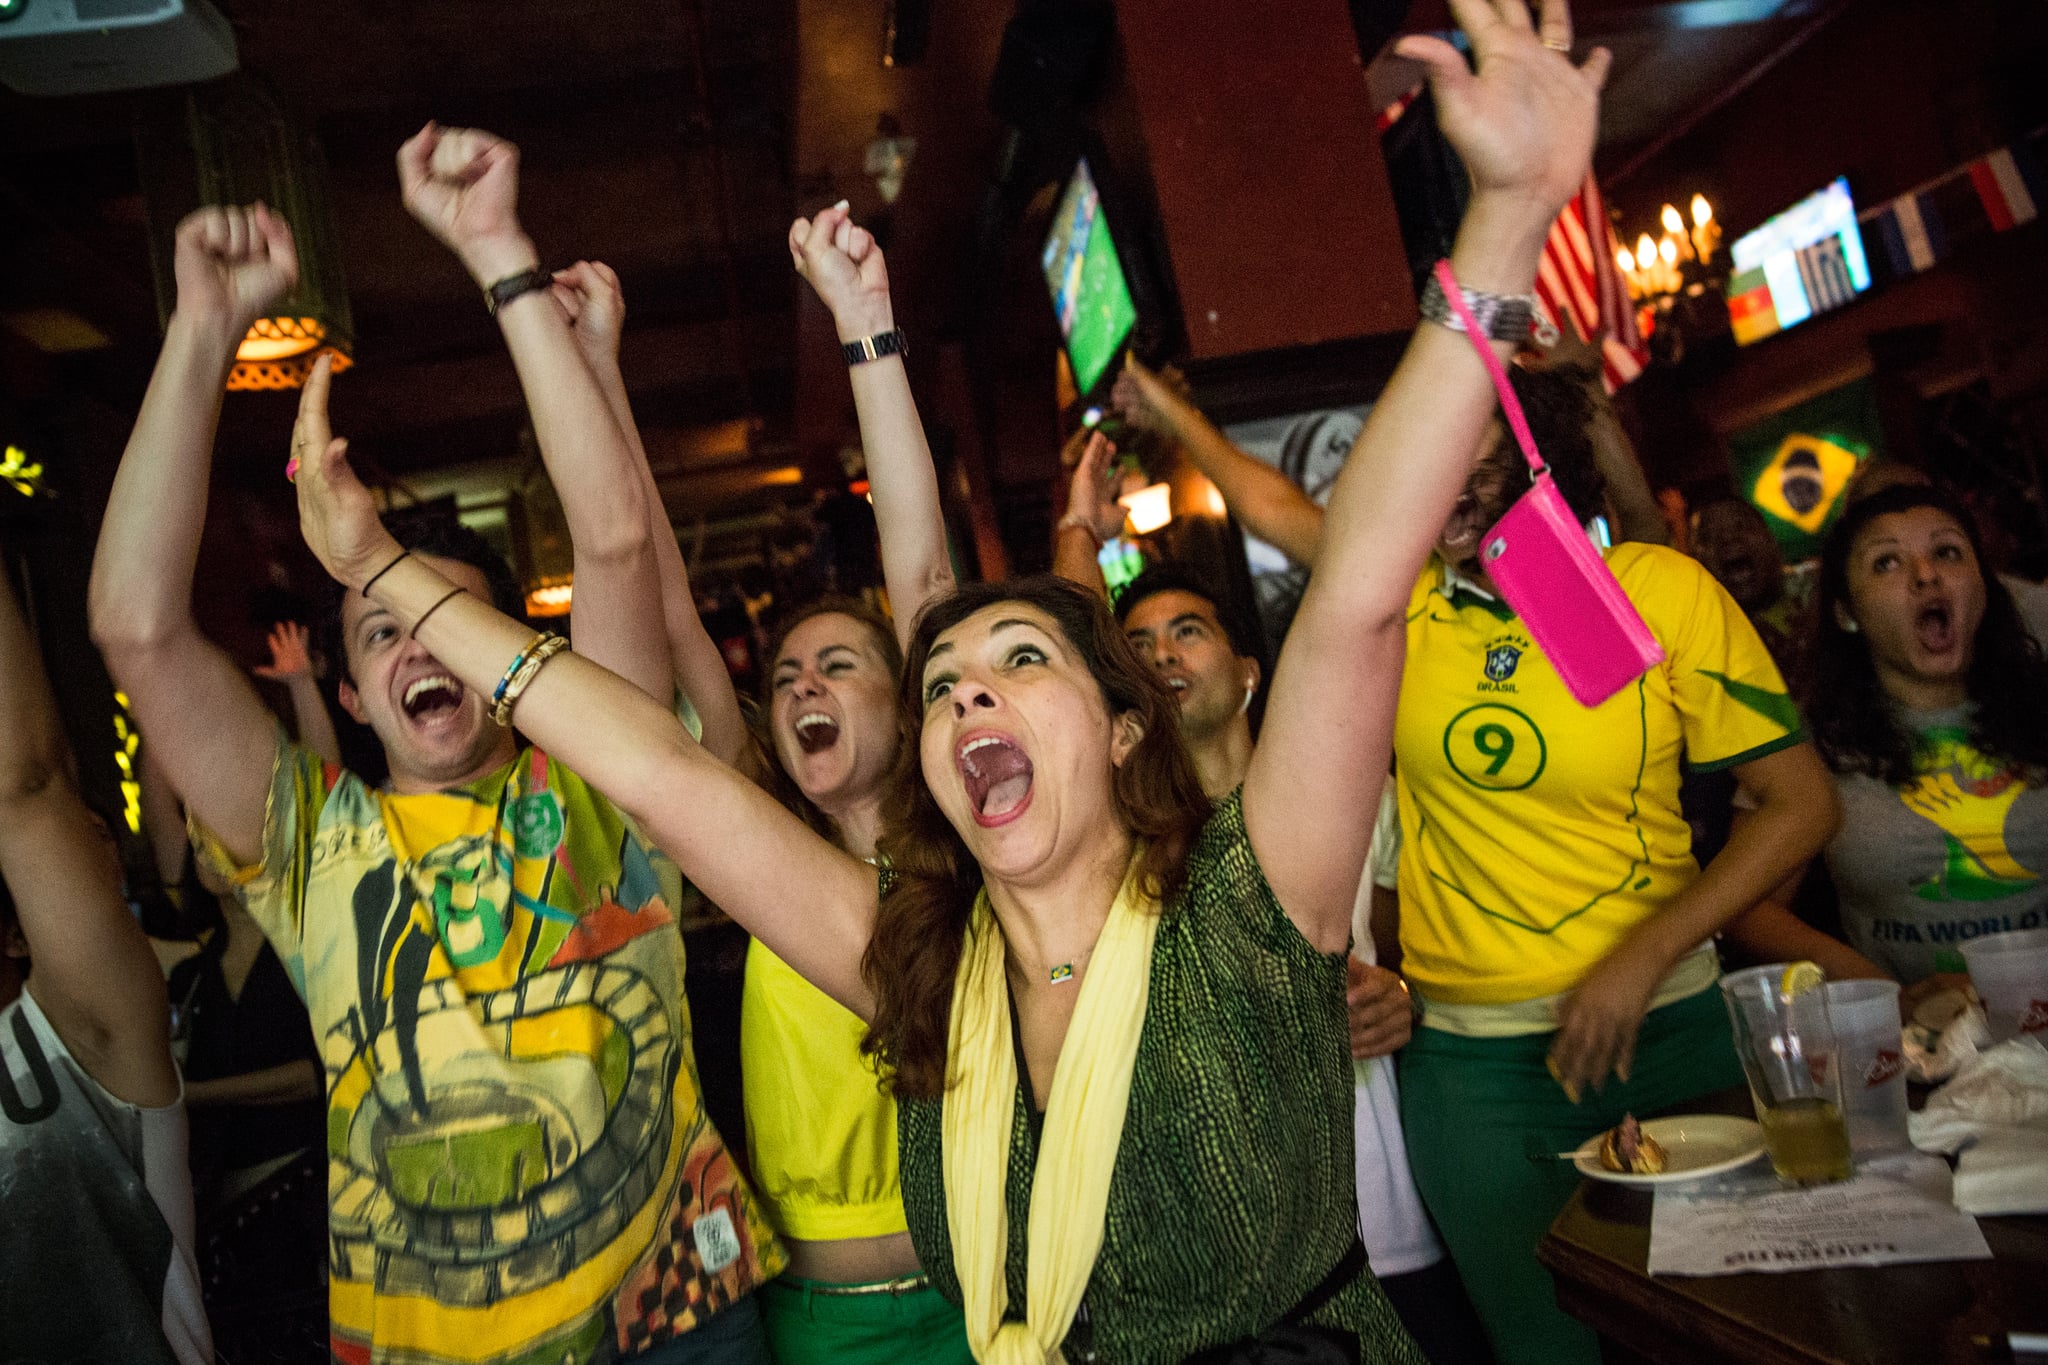 Brazilian-soccer-fans-went-wild-watching-opening-match-bar.jpg